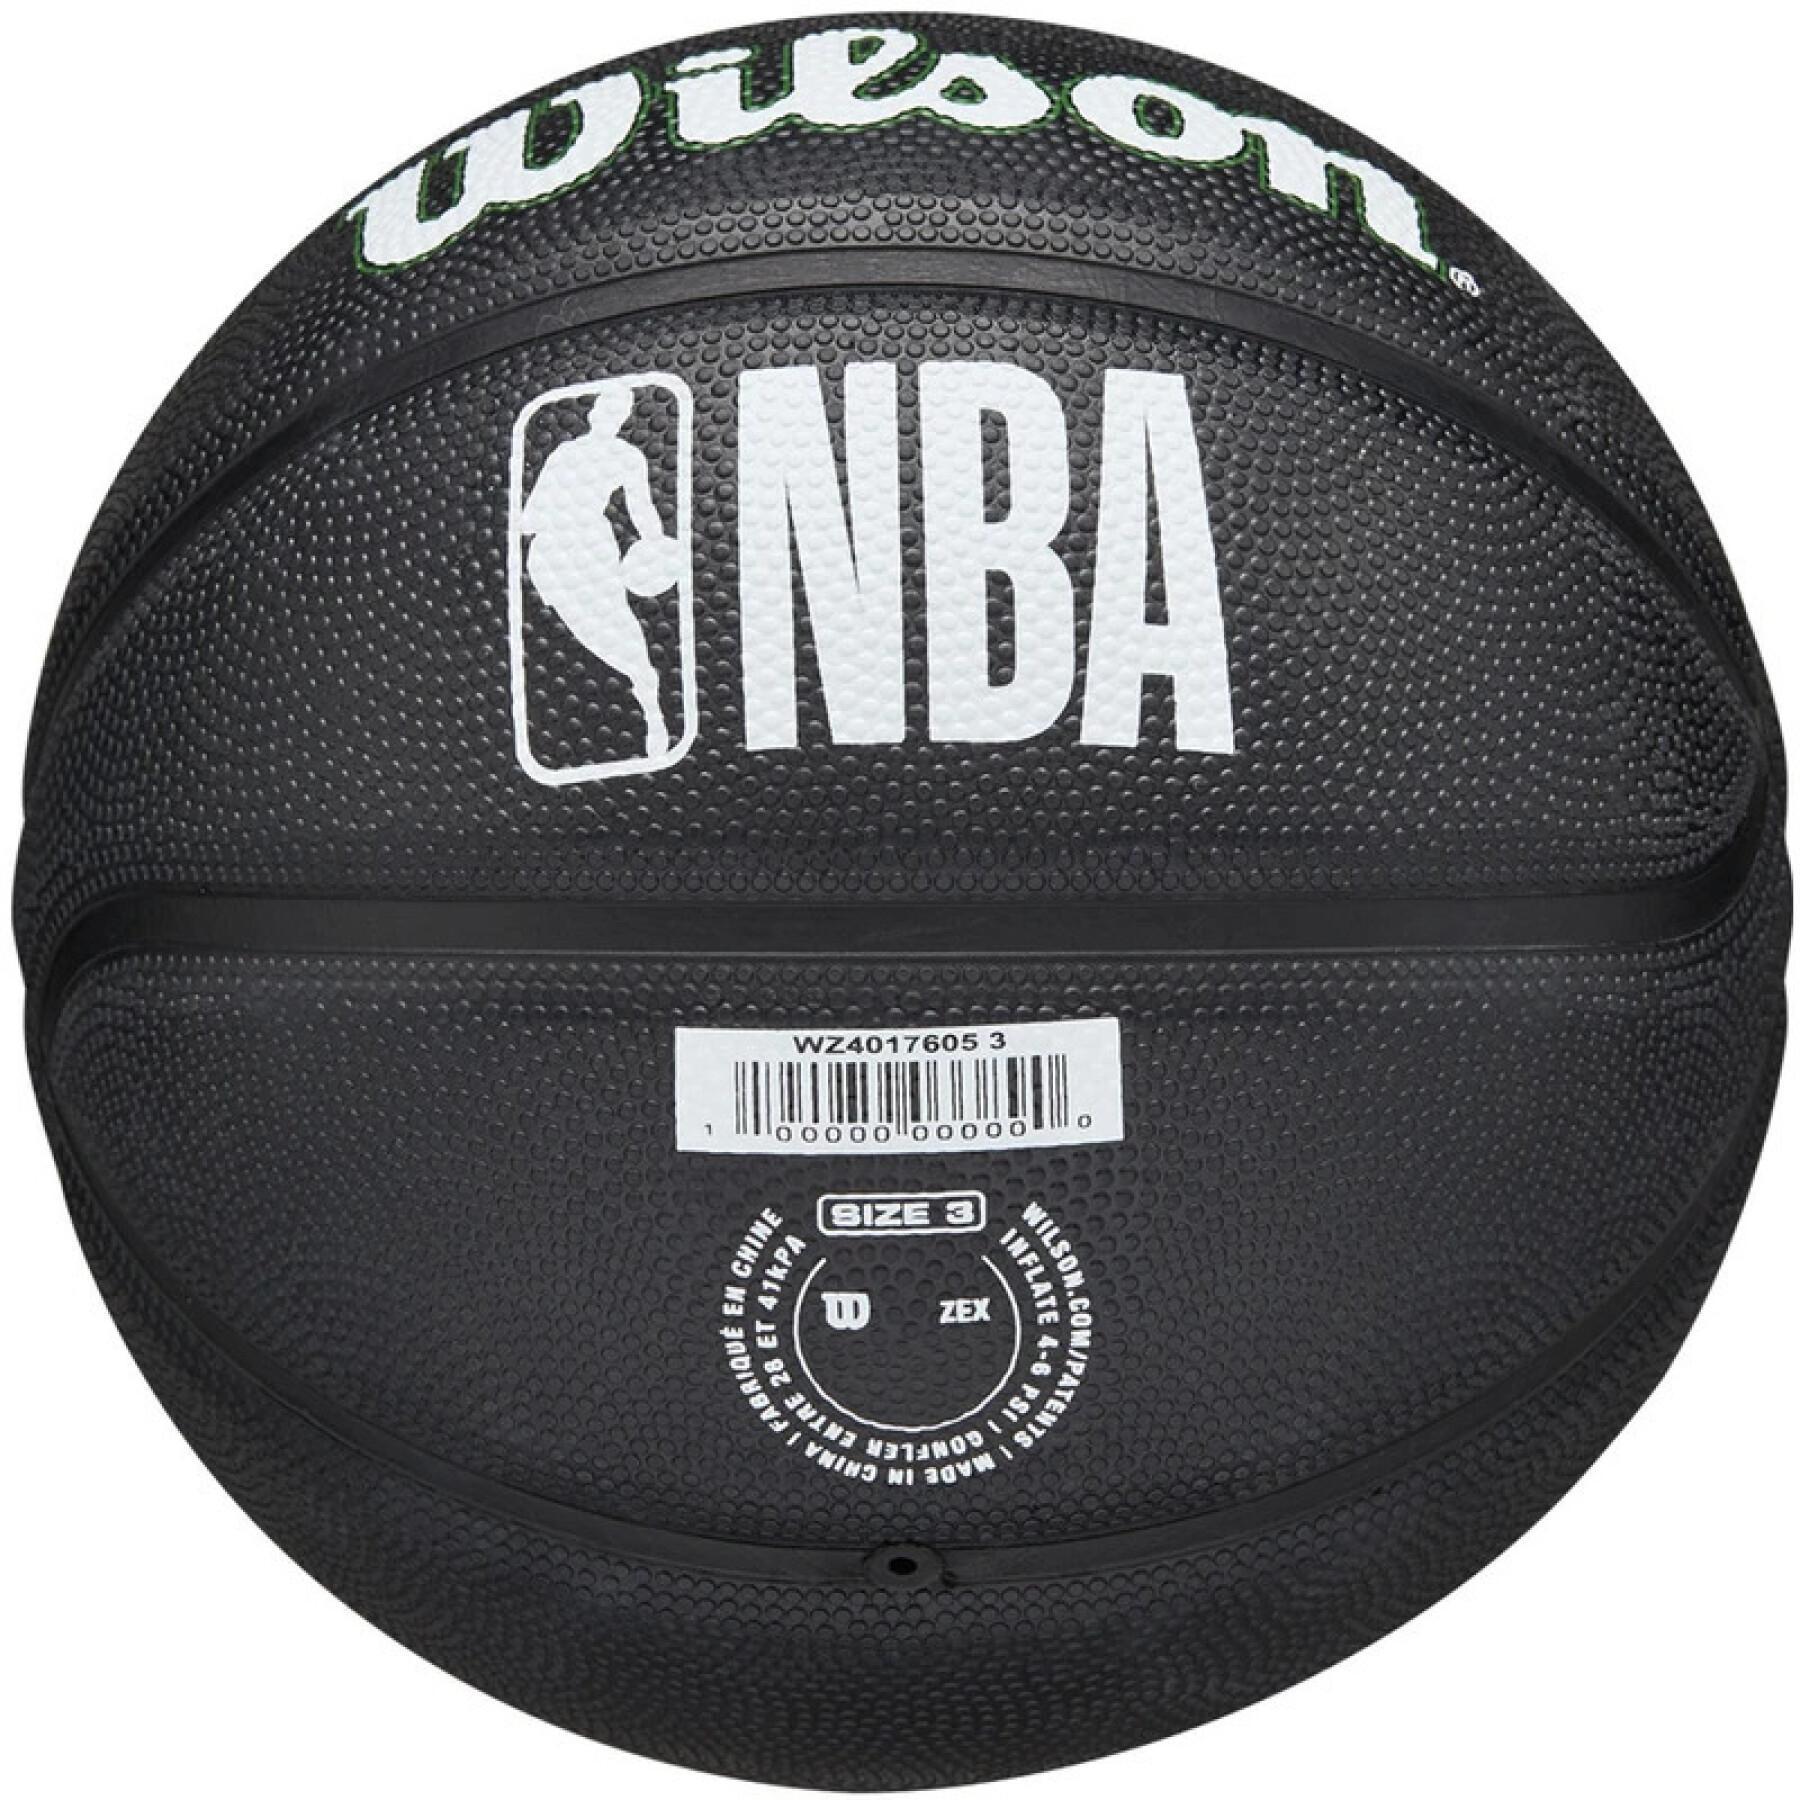 Mini palloncini nba Boston Celtics